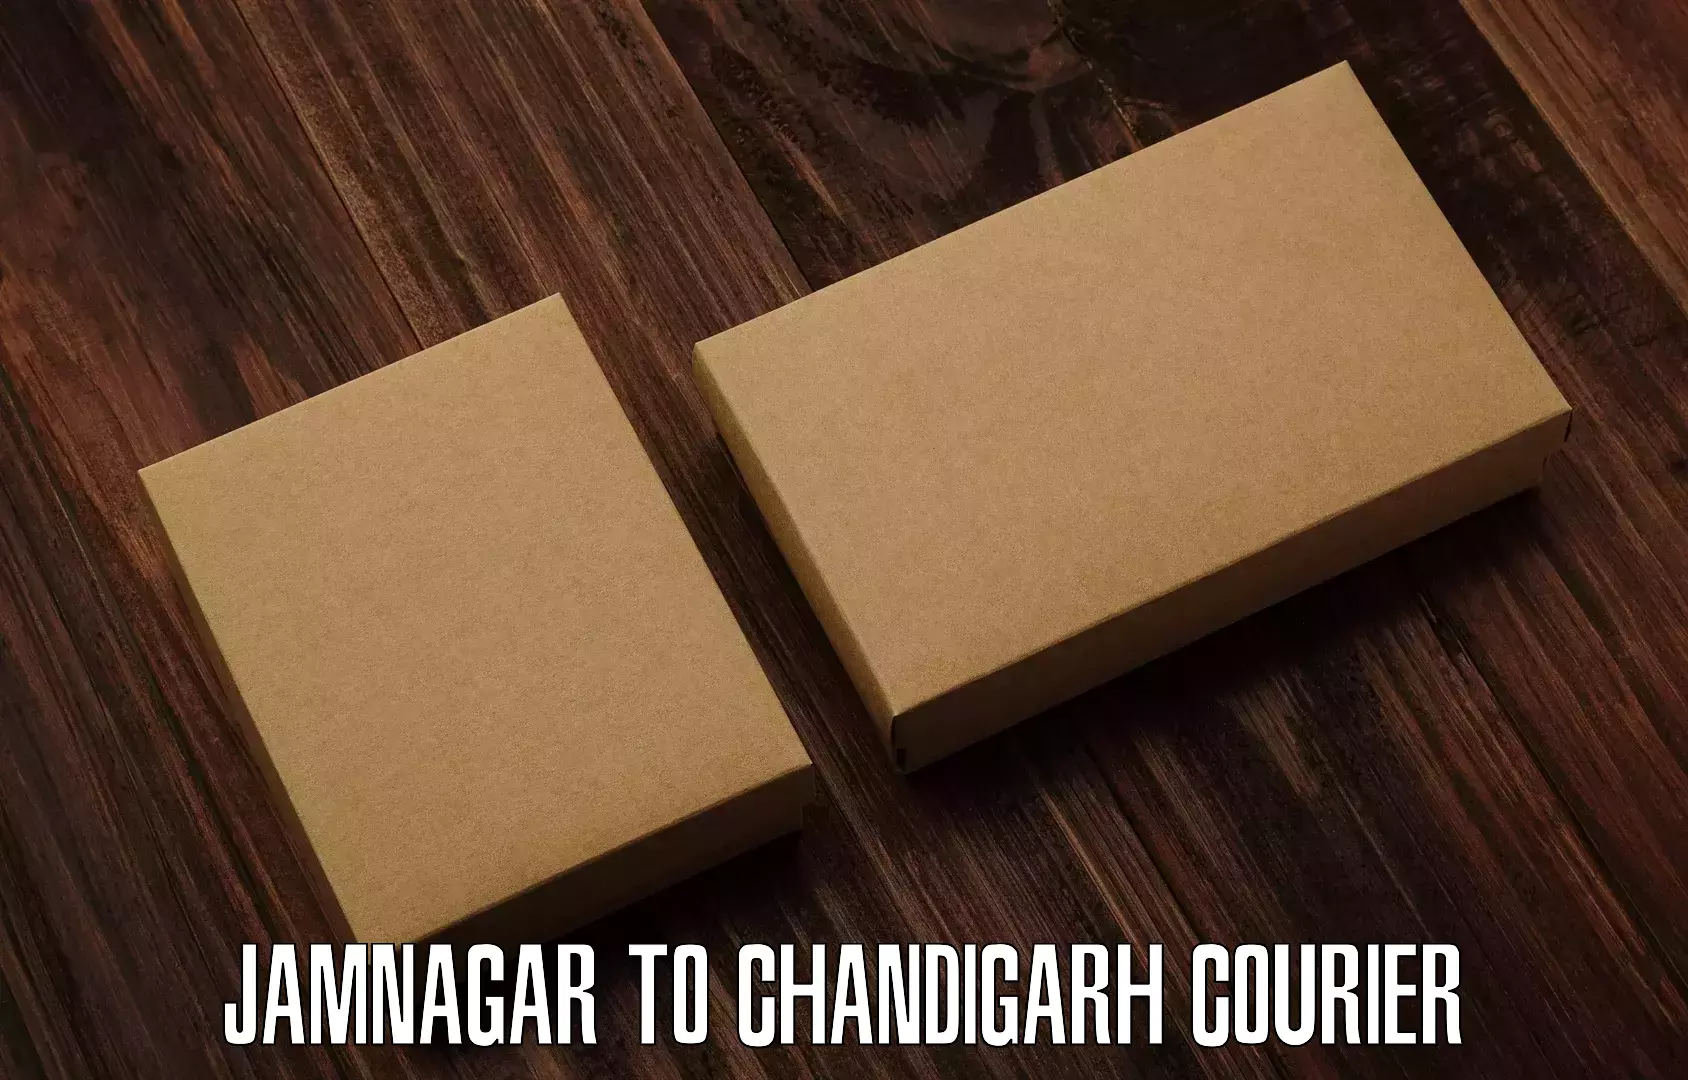 24/7 courier service Jamnagar to Chandigarh